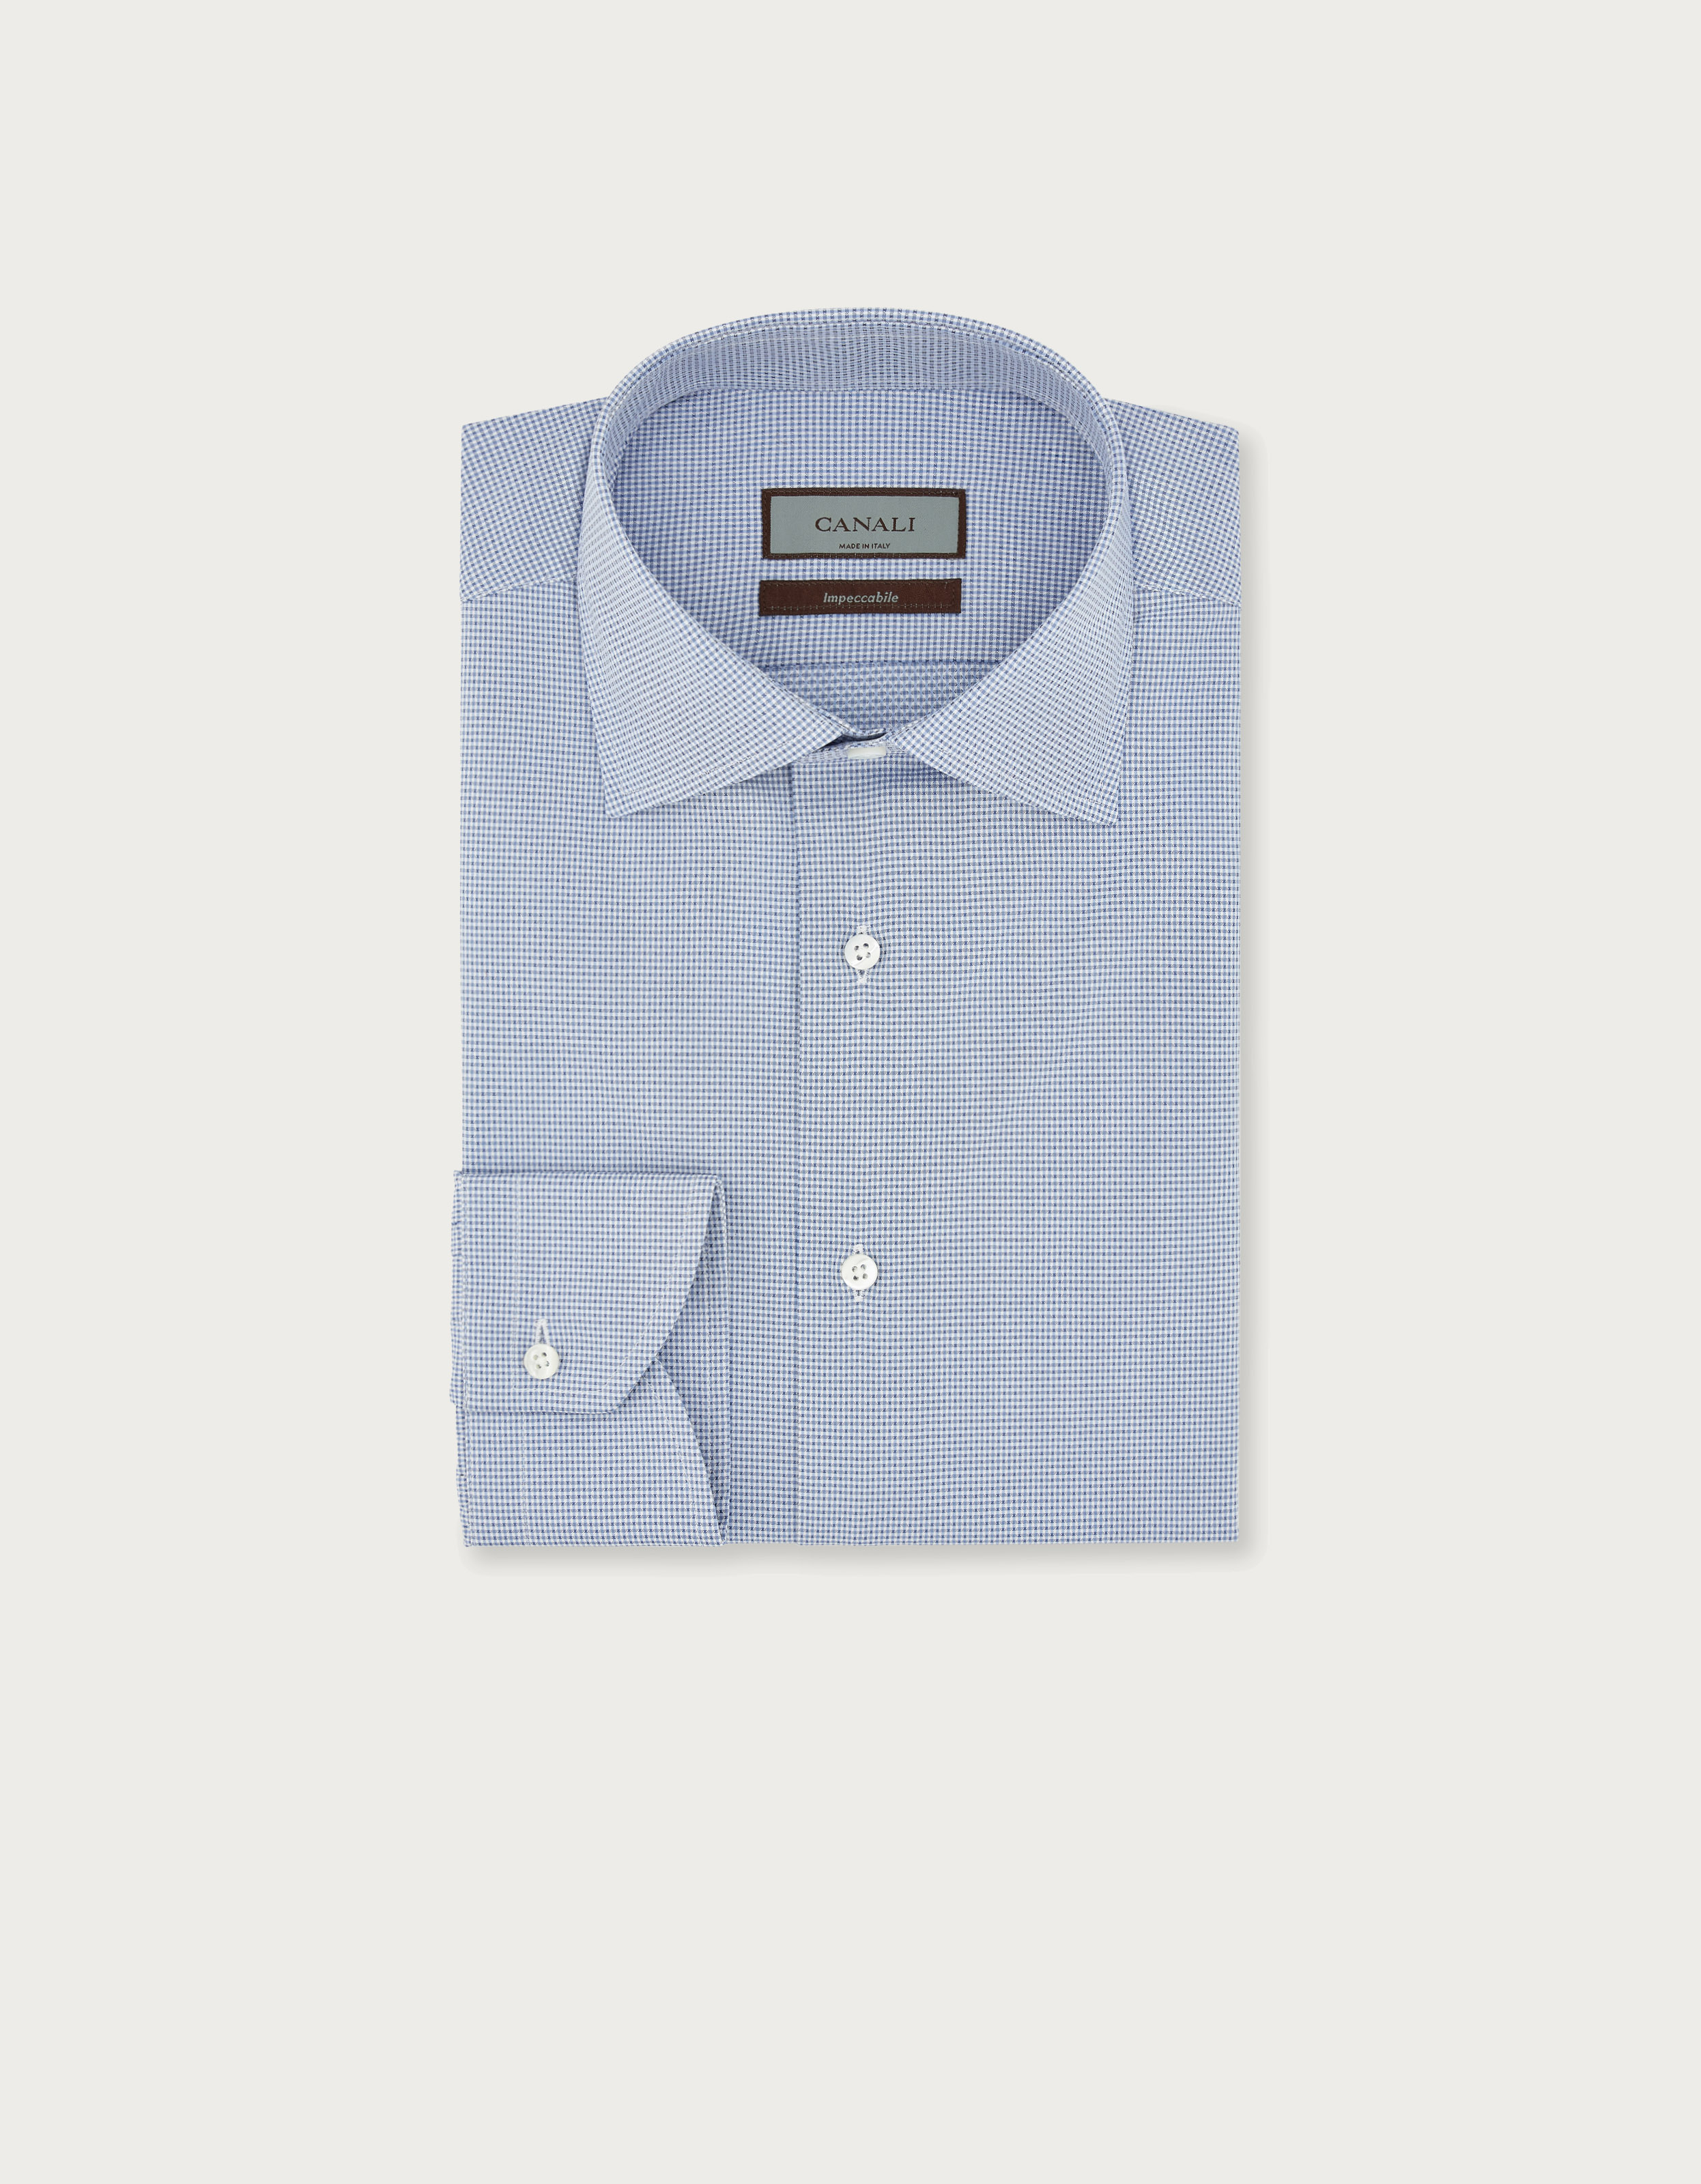 Canali Dress Shirt Light Blue 42 - 16 1/2 Modern Fit - Tie Deals